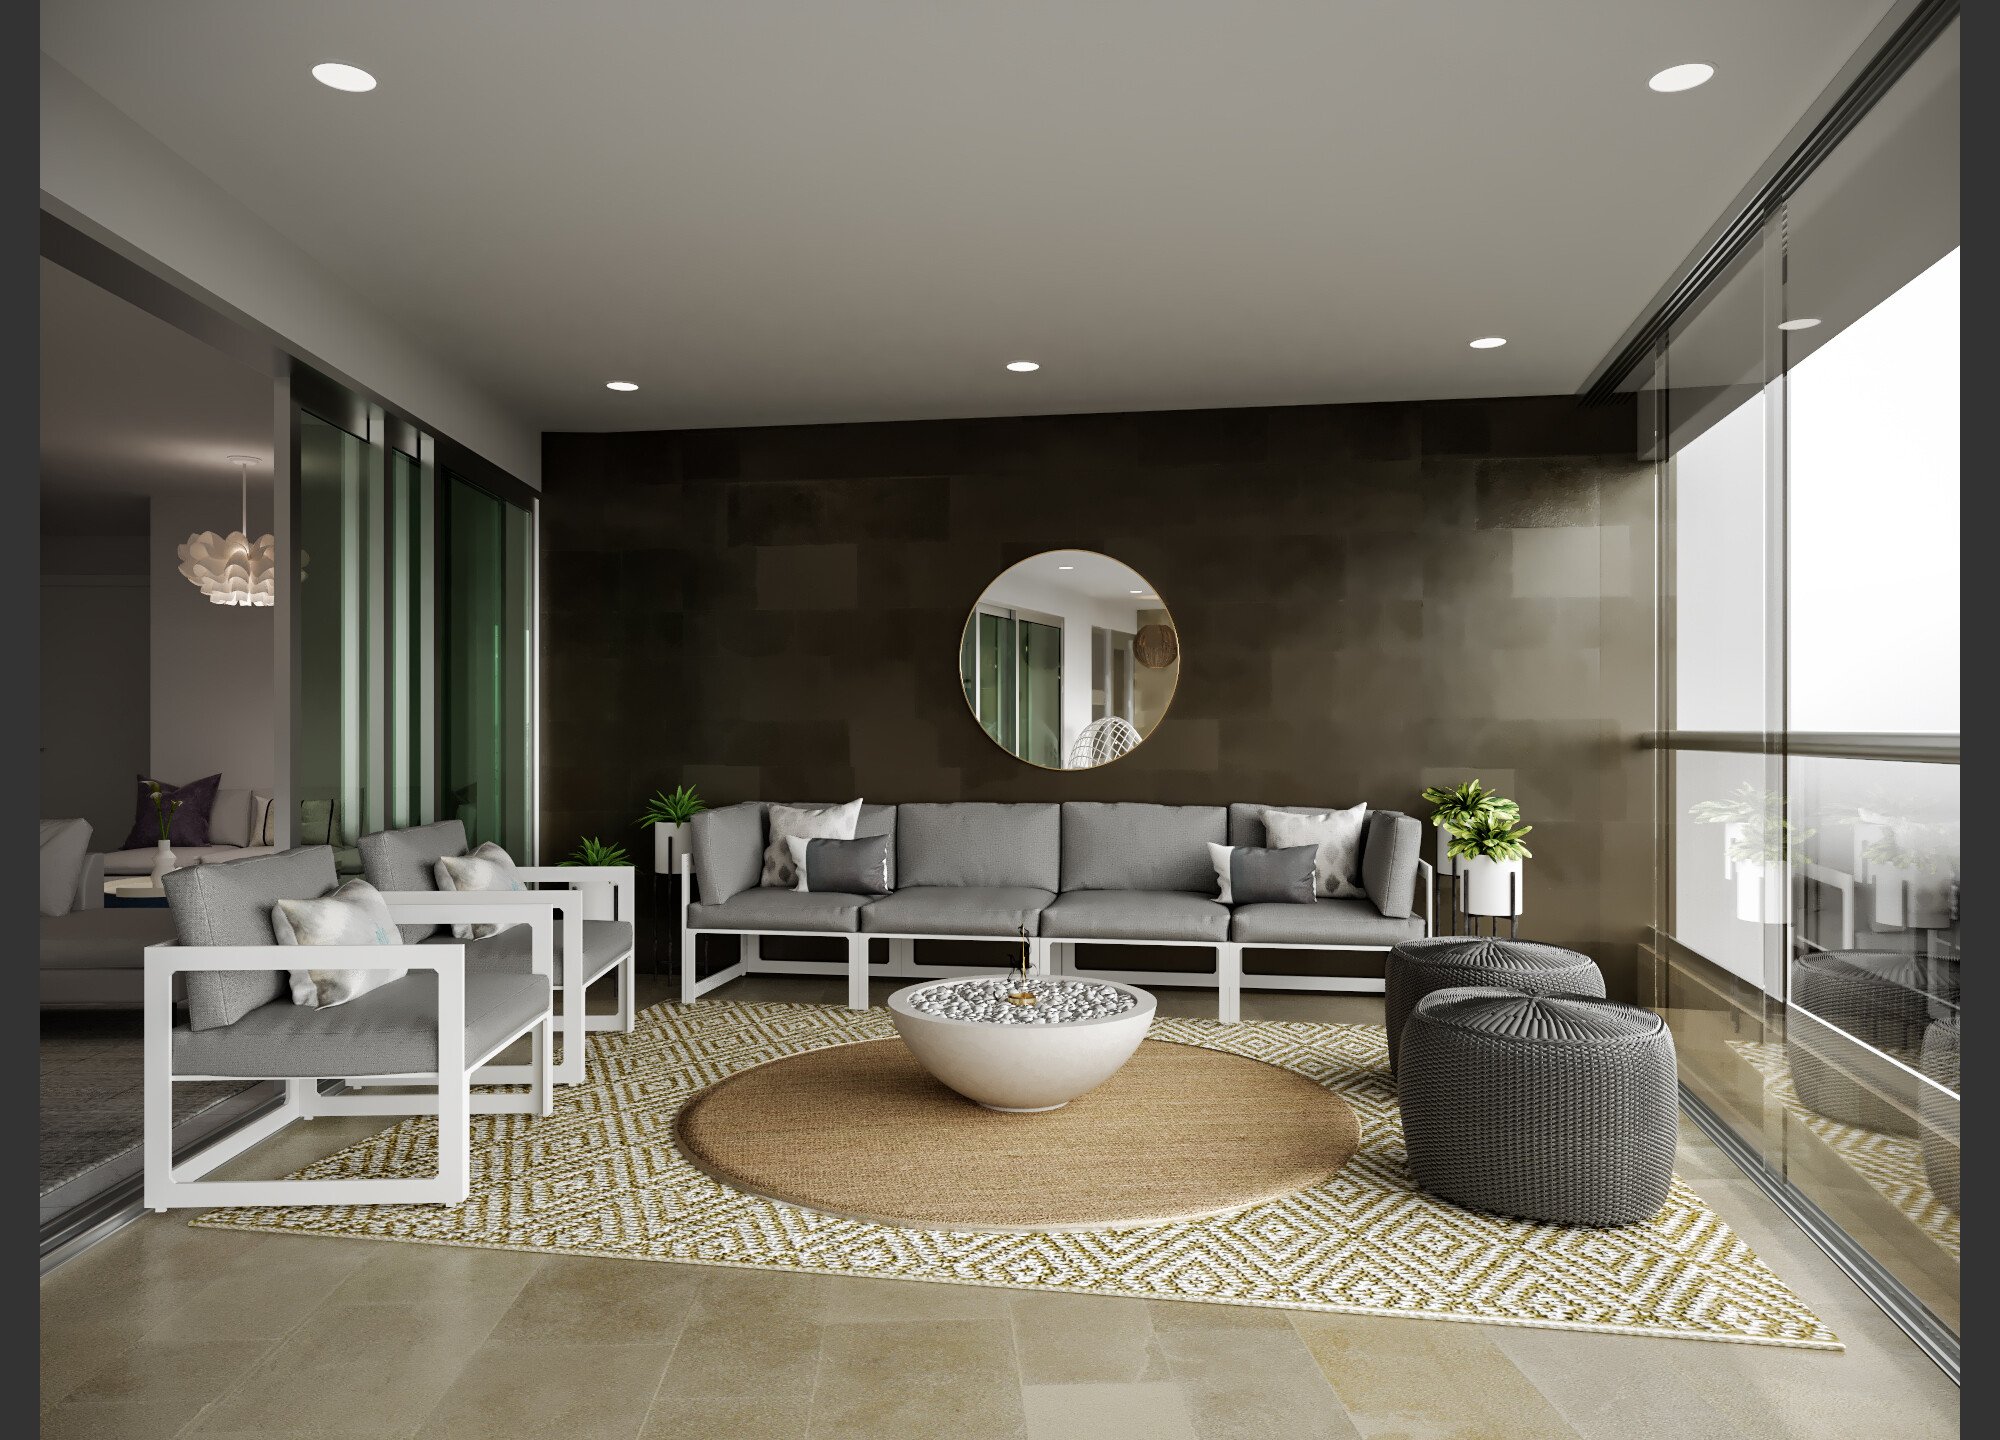 Online Patio Design interior design samples 1